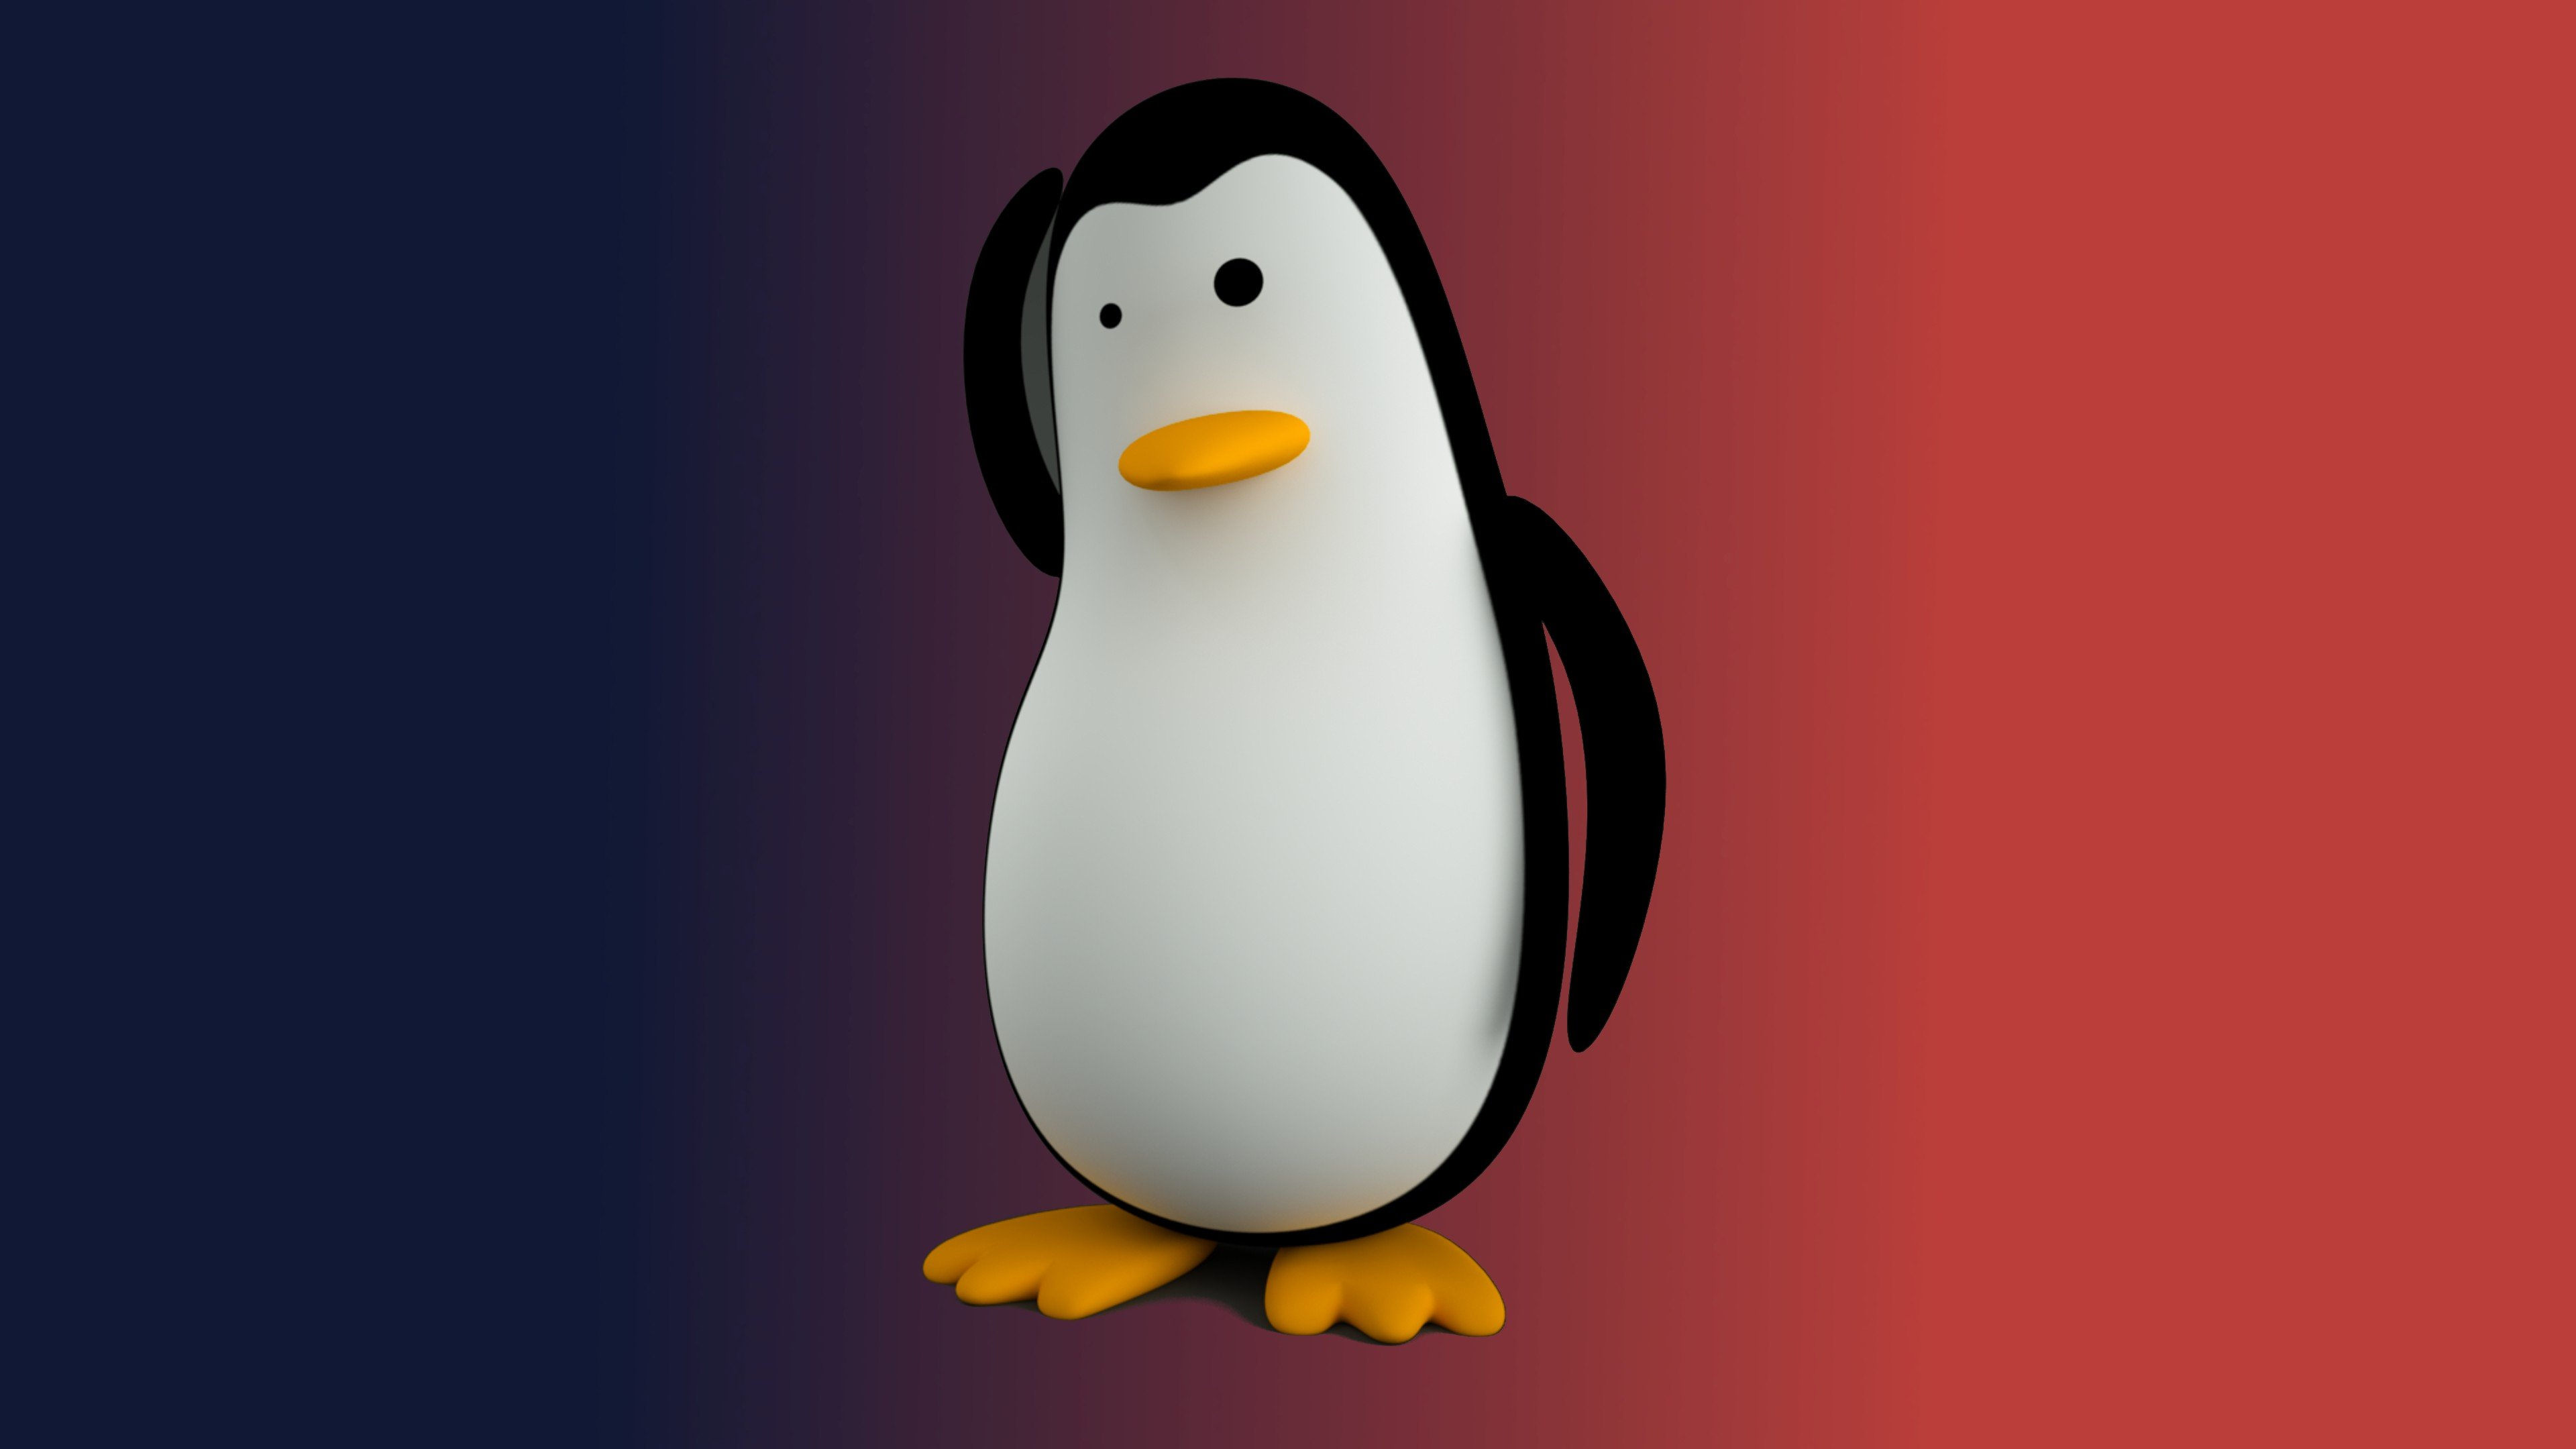 3840x2160 Tux, Linux, Penguin HD Wallpapers / Desktop and Mobile Images \u0026 Photos